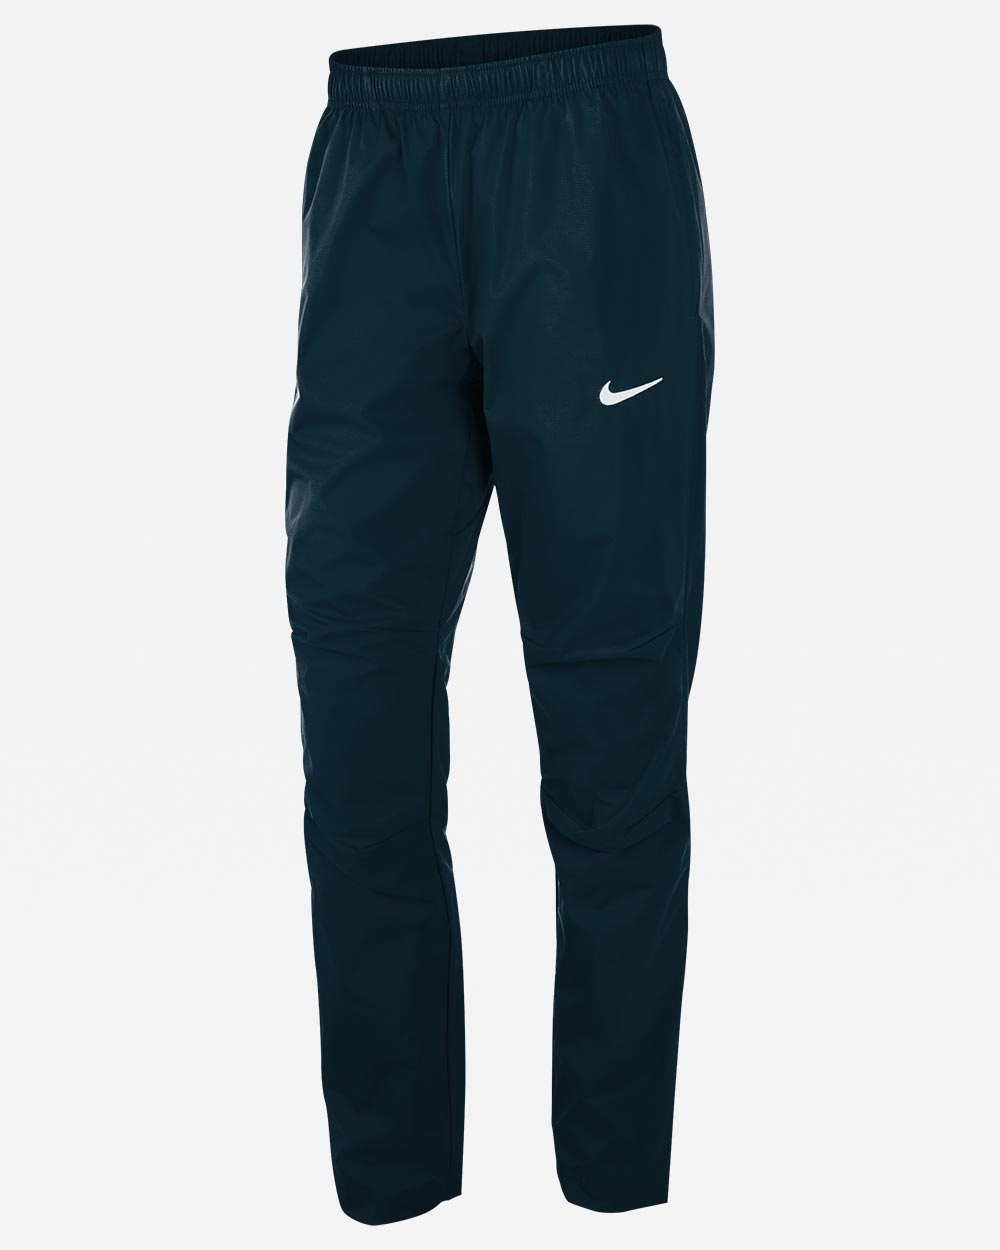 Pantalón de chándal Nike Woven Azul Marino para Mujeres - NT0322-451